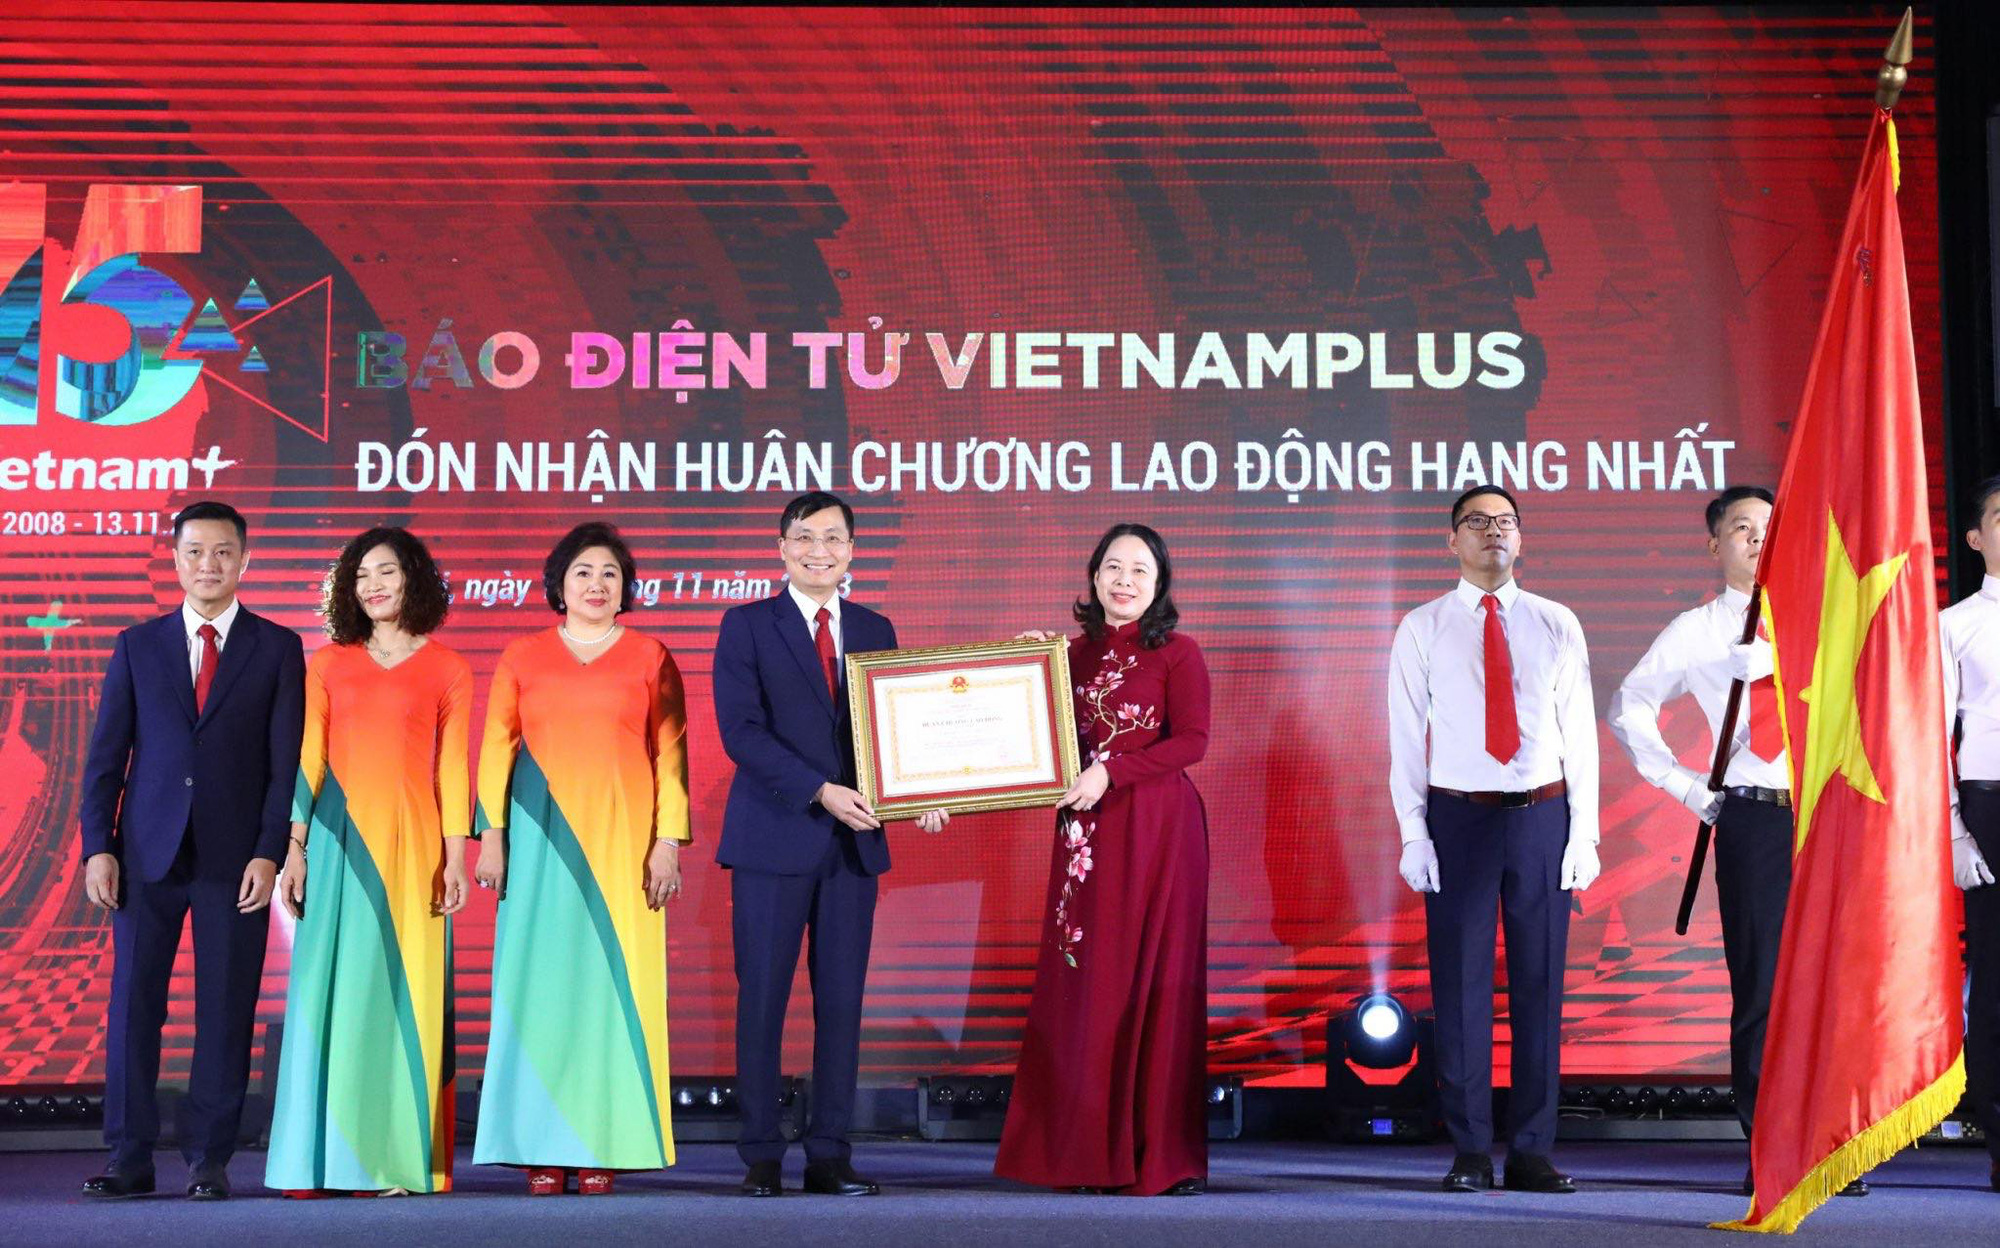 Phó chủ tịch nước Võ Thị Ánh Xuân trao Huân chương Lao động hạng nhất cho báo VietnamPlus - Ảnh: MINH SƠN